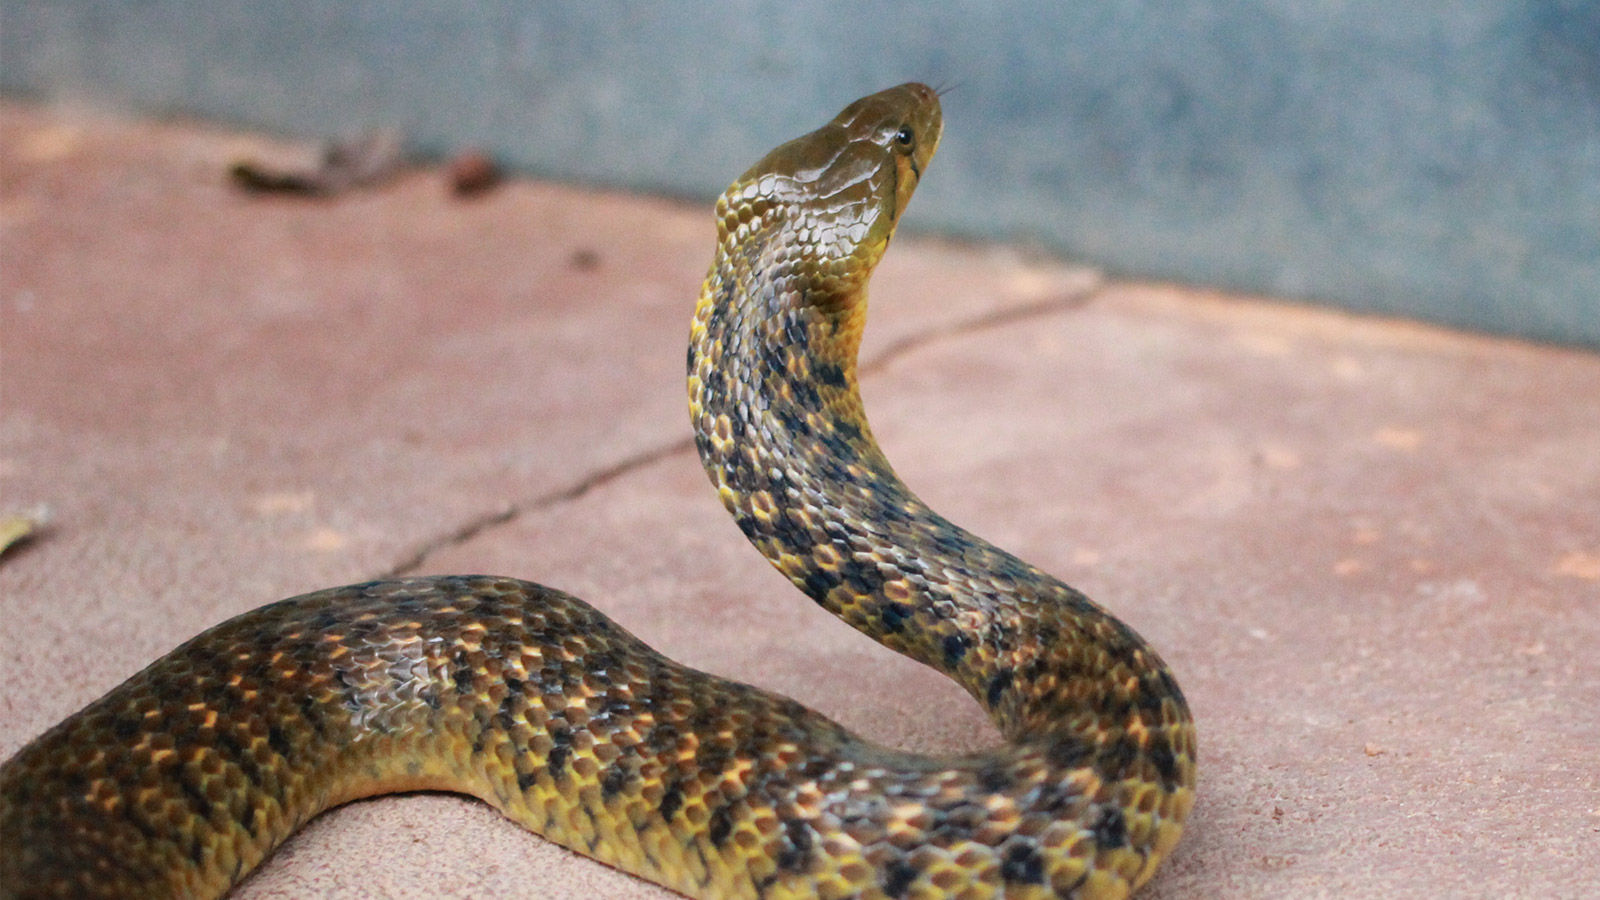 "Найгірший кошмар", – жива змія наробила переполоху у салоні літака Thai AirAsia